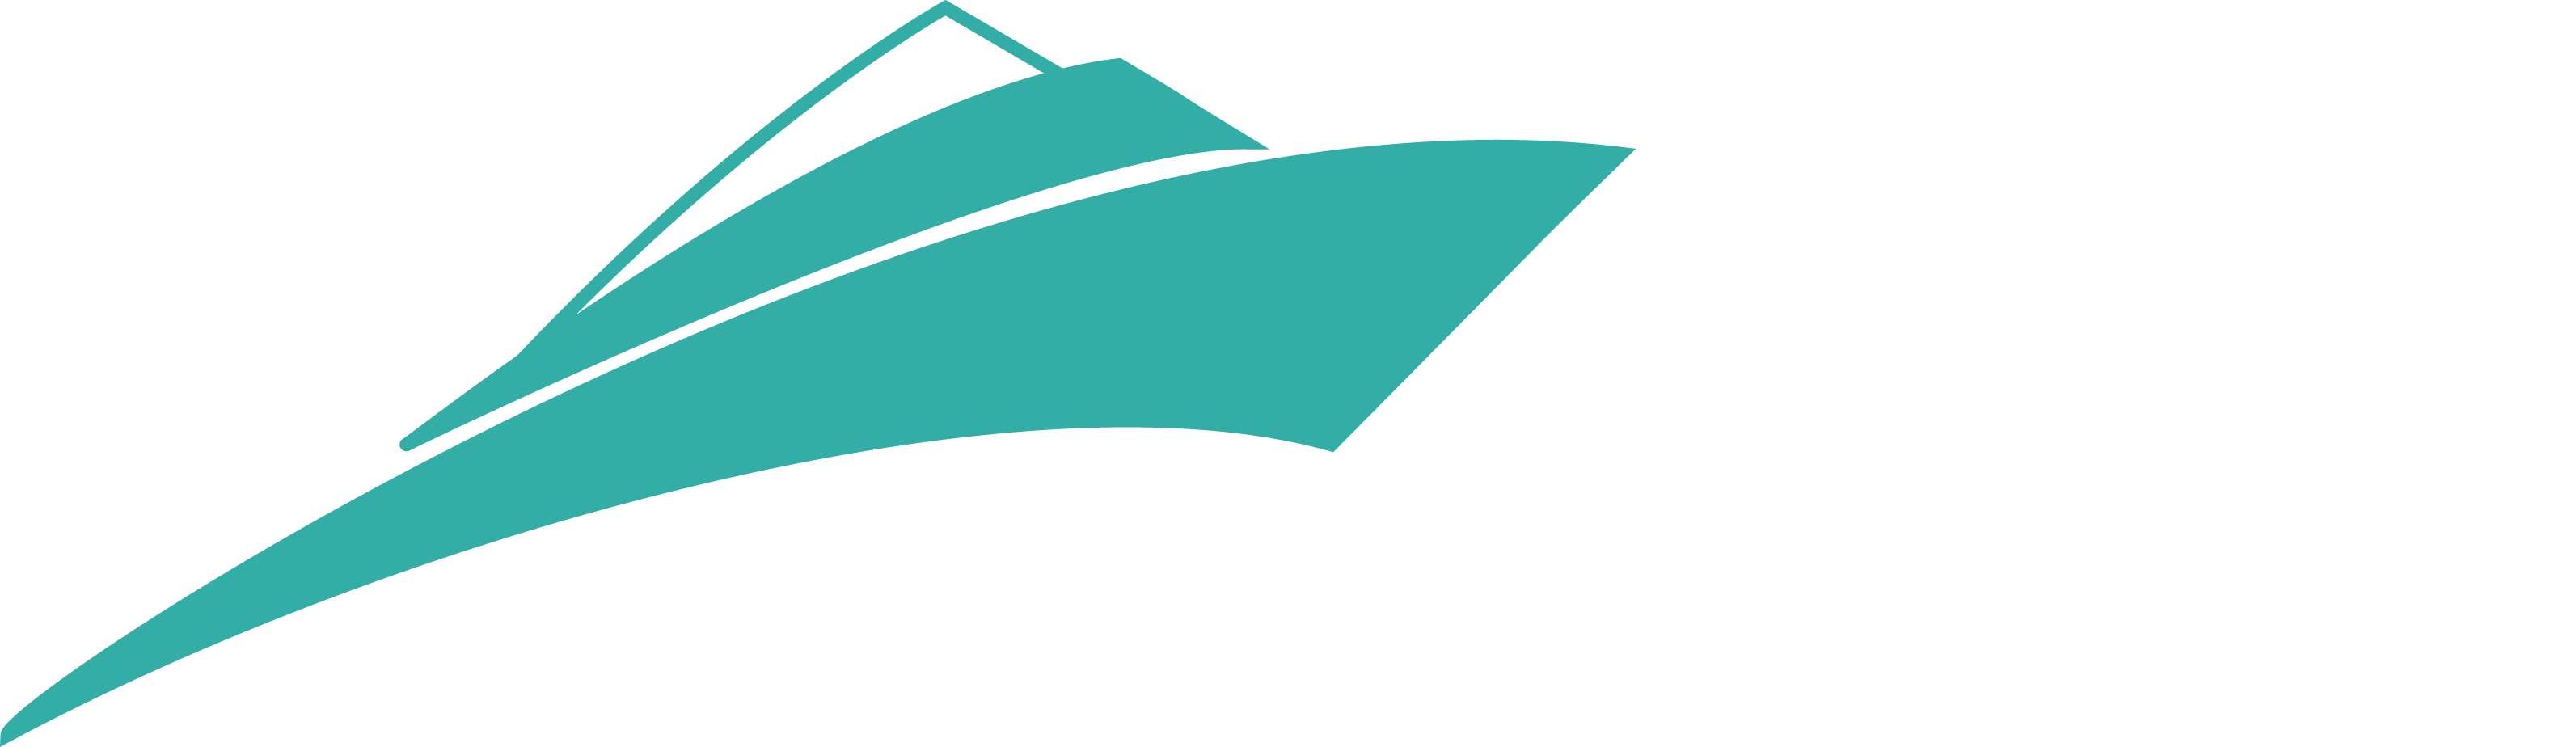 x yacht 56